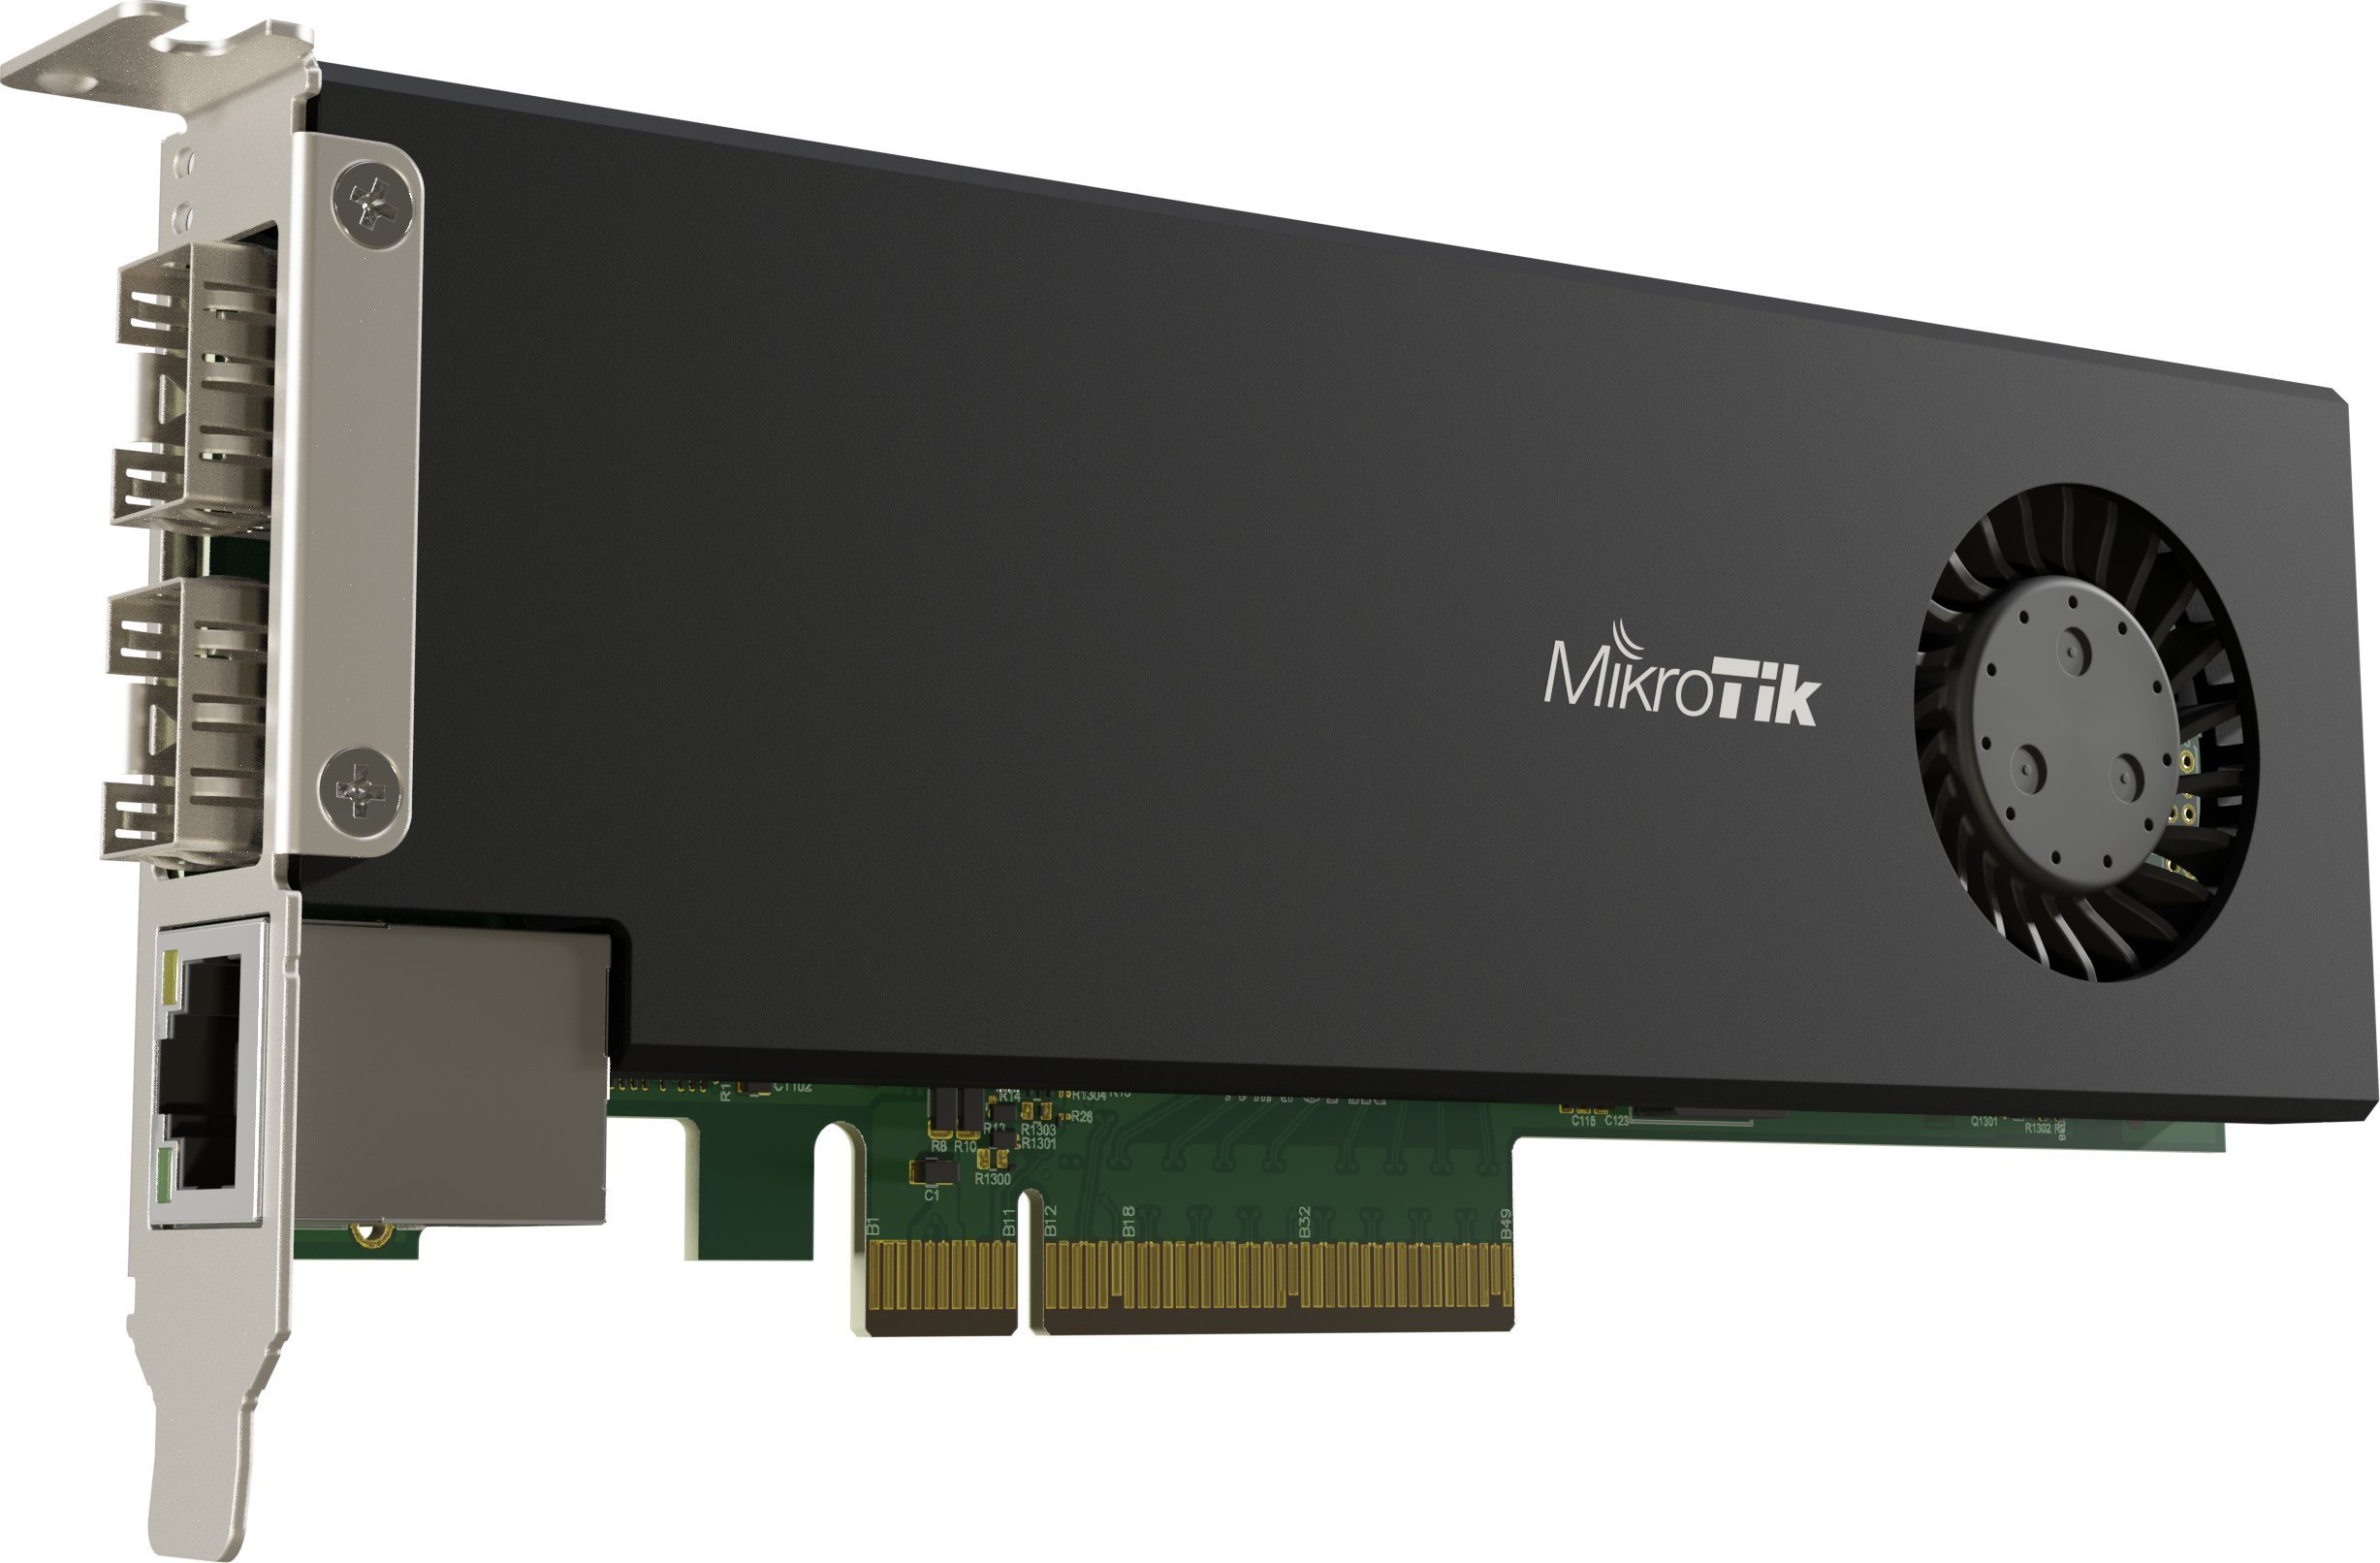 Router MikroTik NET ROUTER ACC CARD PCIE/CCR2004-1G-2XS-PCIE MIKROTIK